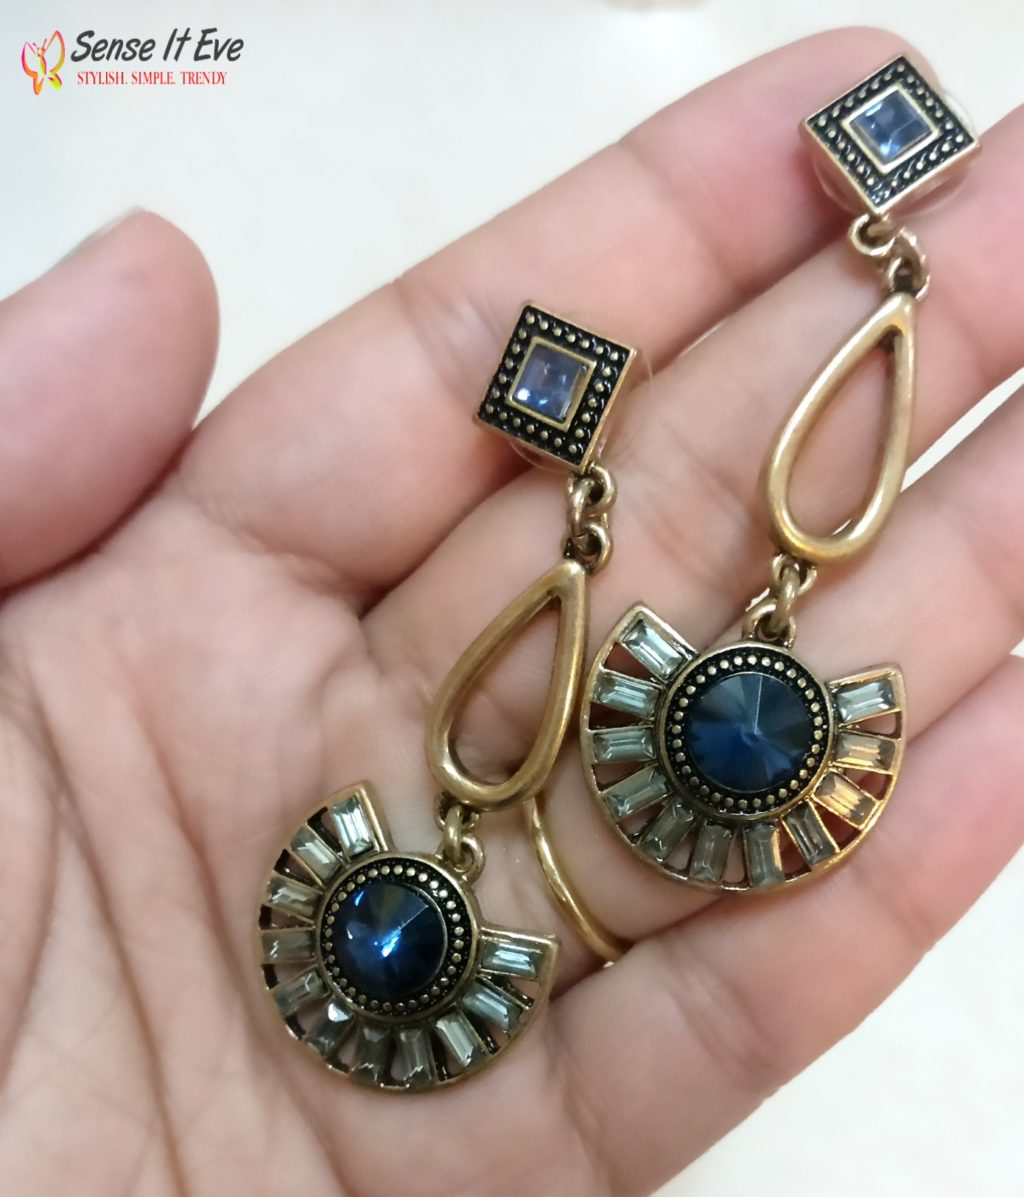 damsel code Blue Retro Fan Earrings e1496849066753 Sense It Eve Decoding Fashion Jewelry with Damsel Code